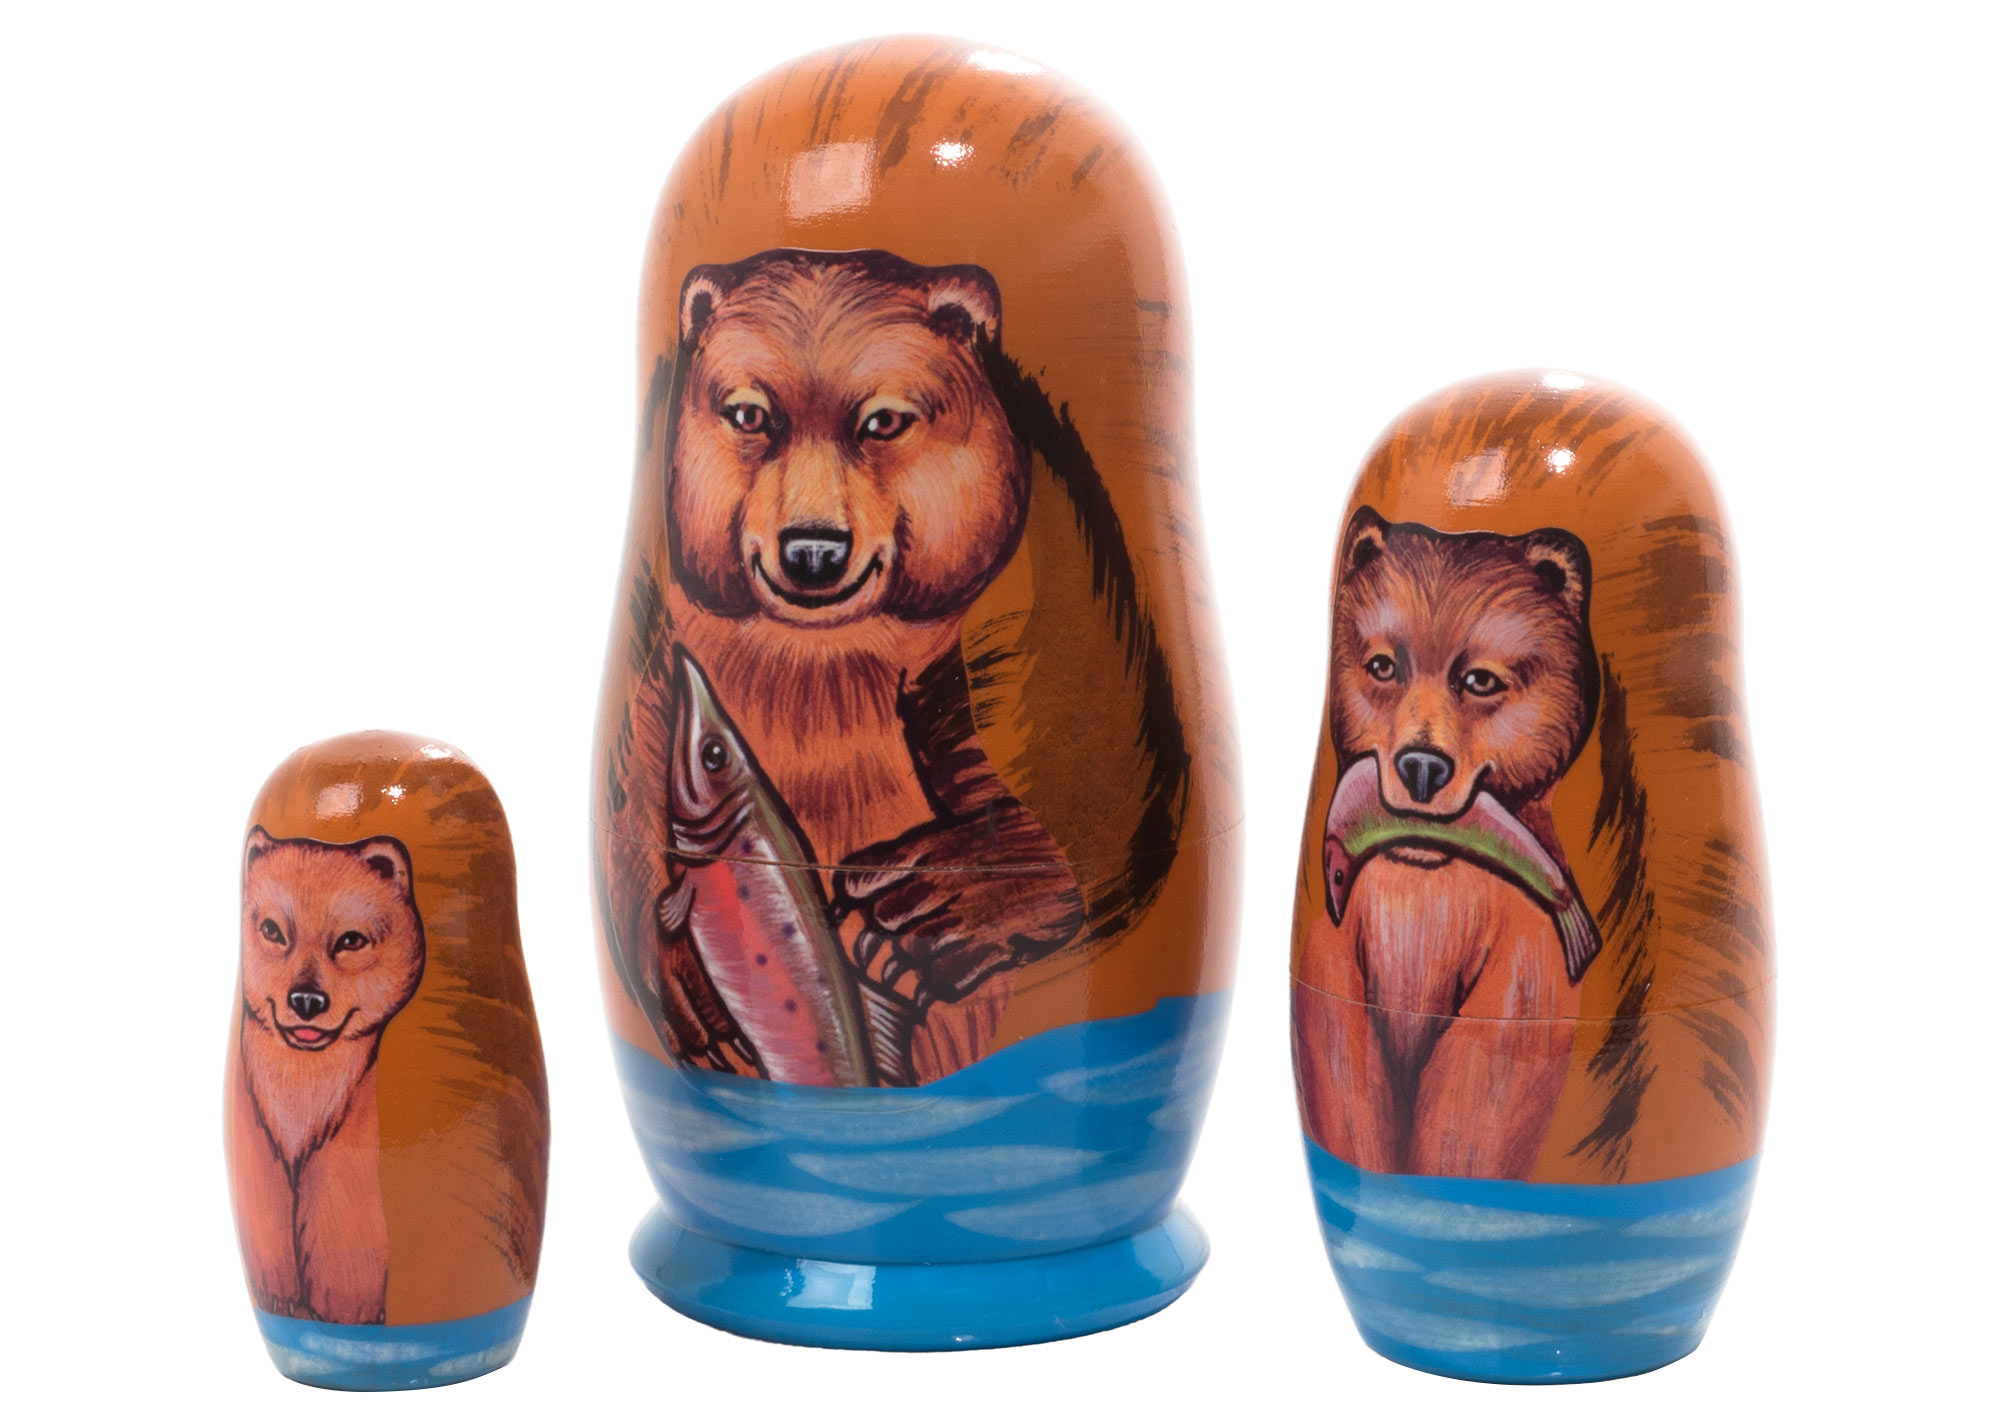 Buy Матрешка «Медведь гризли» 3 места 9 см at GoldenCockerel.com